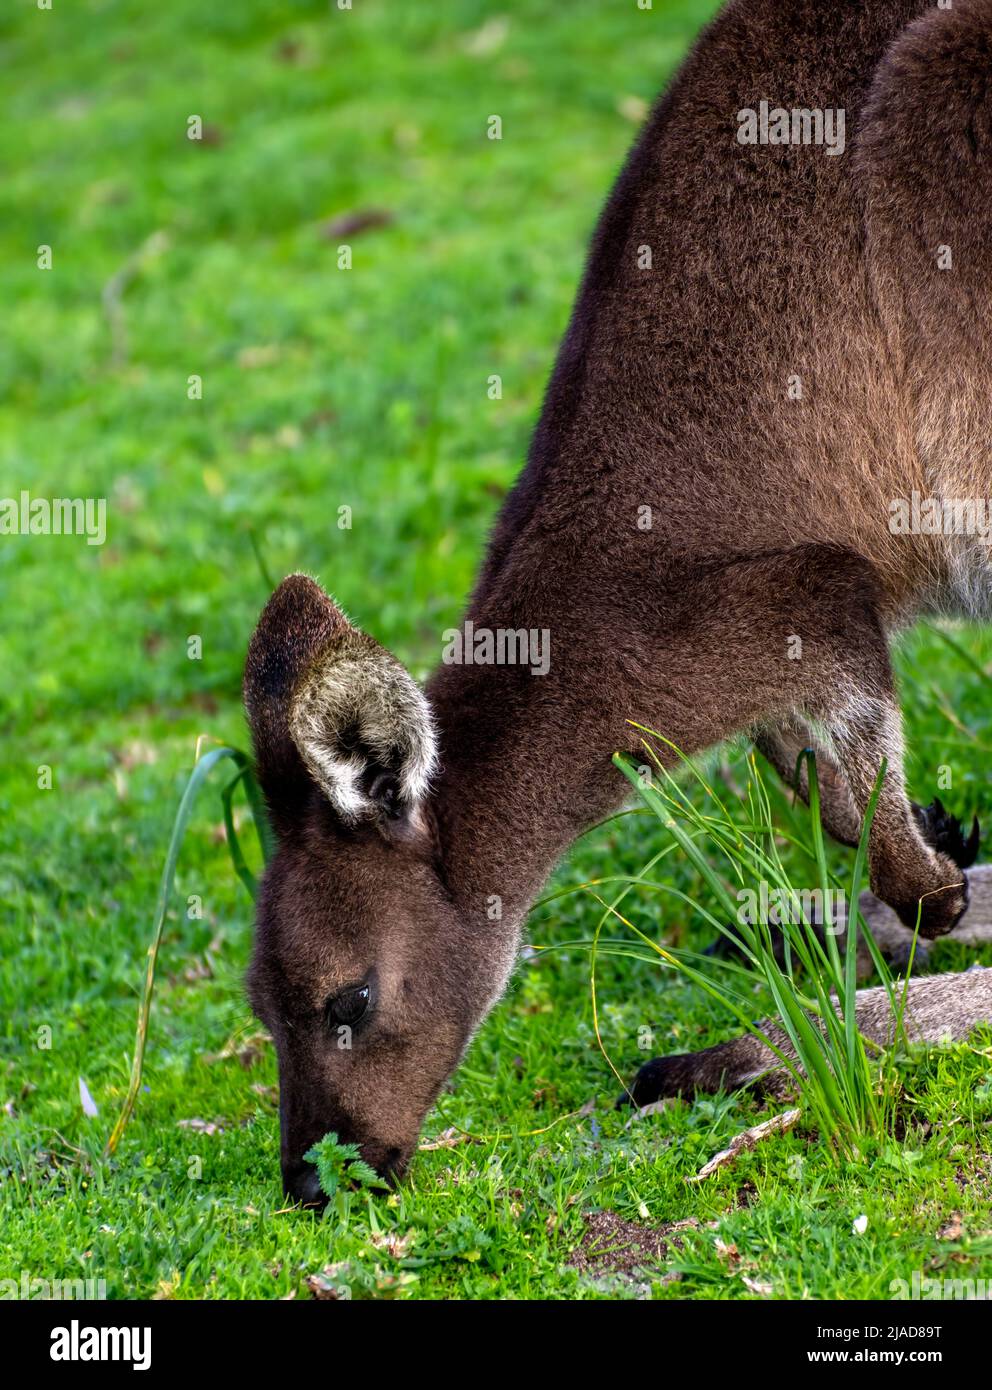 Gros plan d'un kangourou gris occidental (Macropus fuliginosus) mangeant de l'herbe, Australie occidentale, Australie Banque D'Images